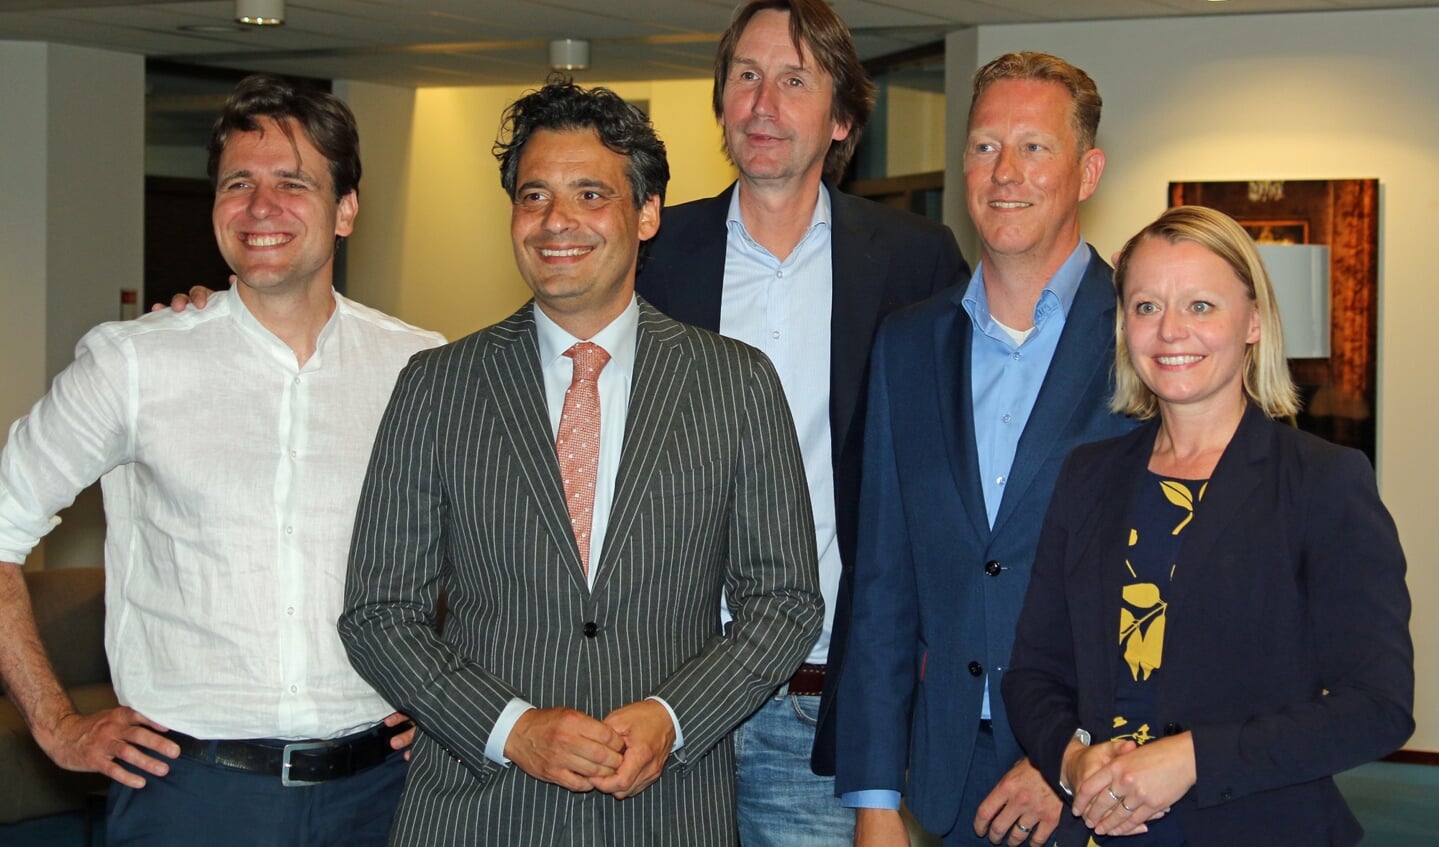 De vijf kandidaat-wethouders. Vlnr.: Marijn van Ballegooijen, Adam Elzakalai, Herbert Raat, Frank Berkhout en Floor Gordon.